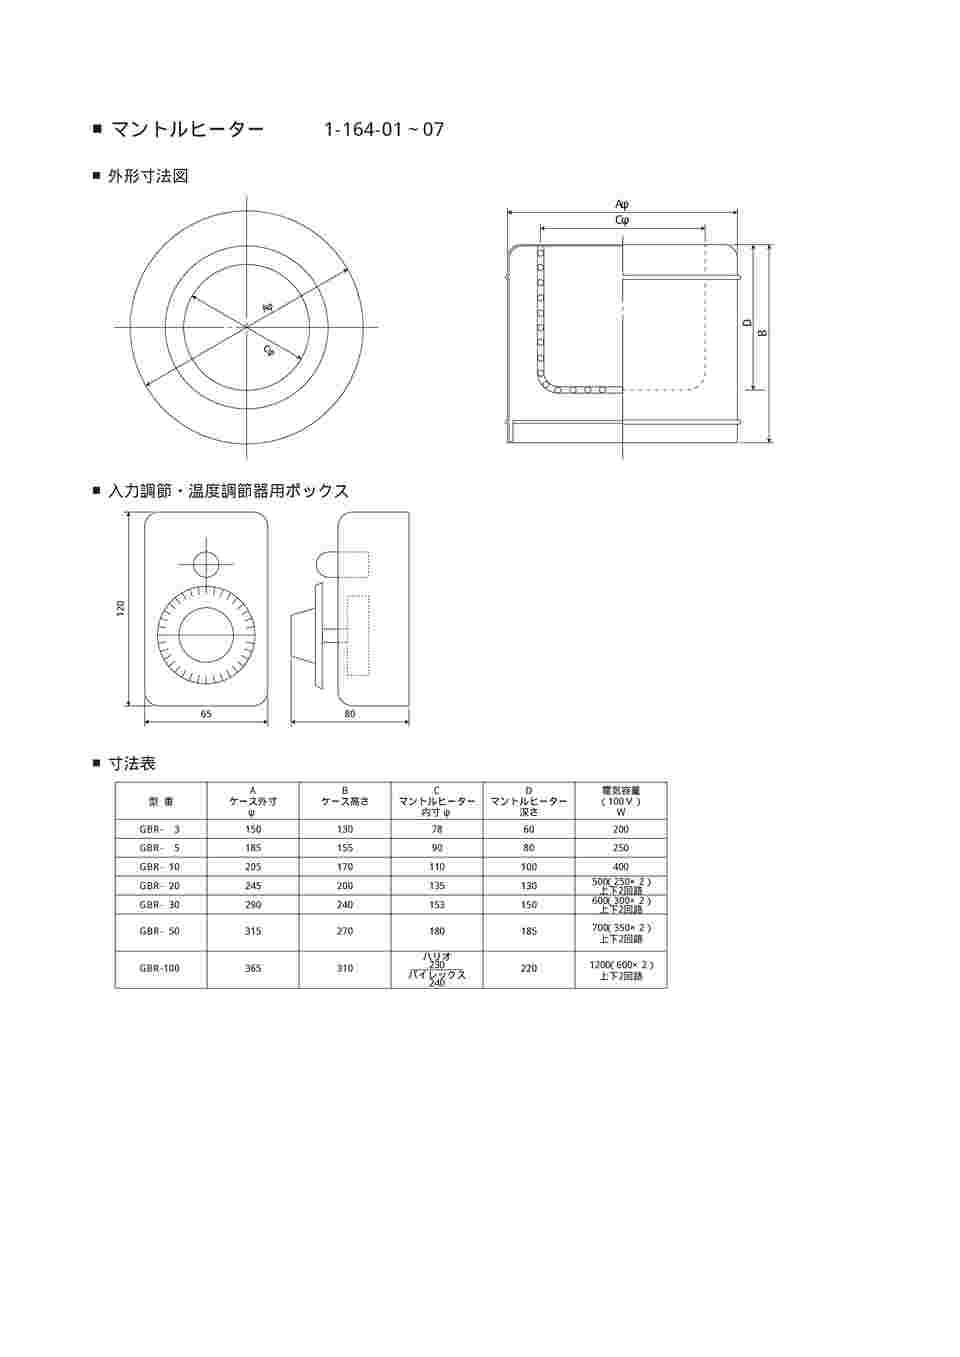 1-164-03 マントルヒーター入力調節器付き(ビーカー用) GBR-10 【AXEL